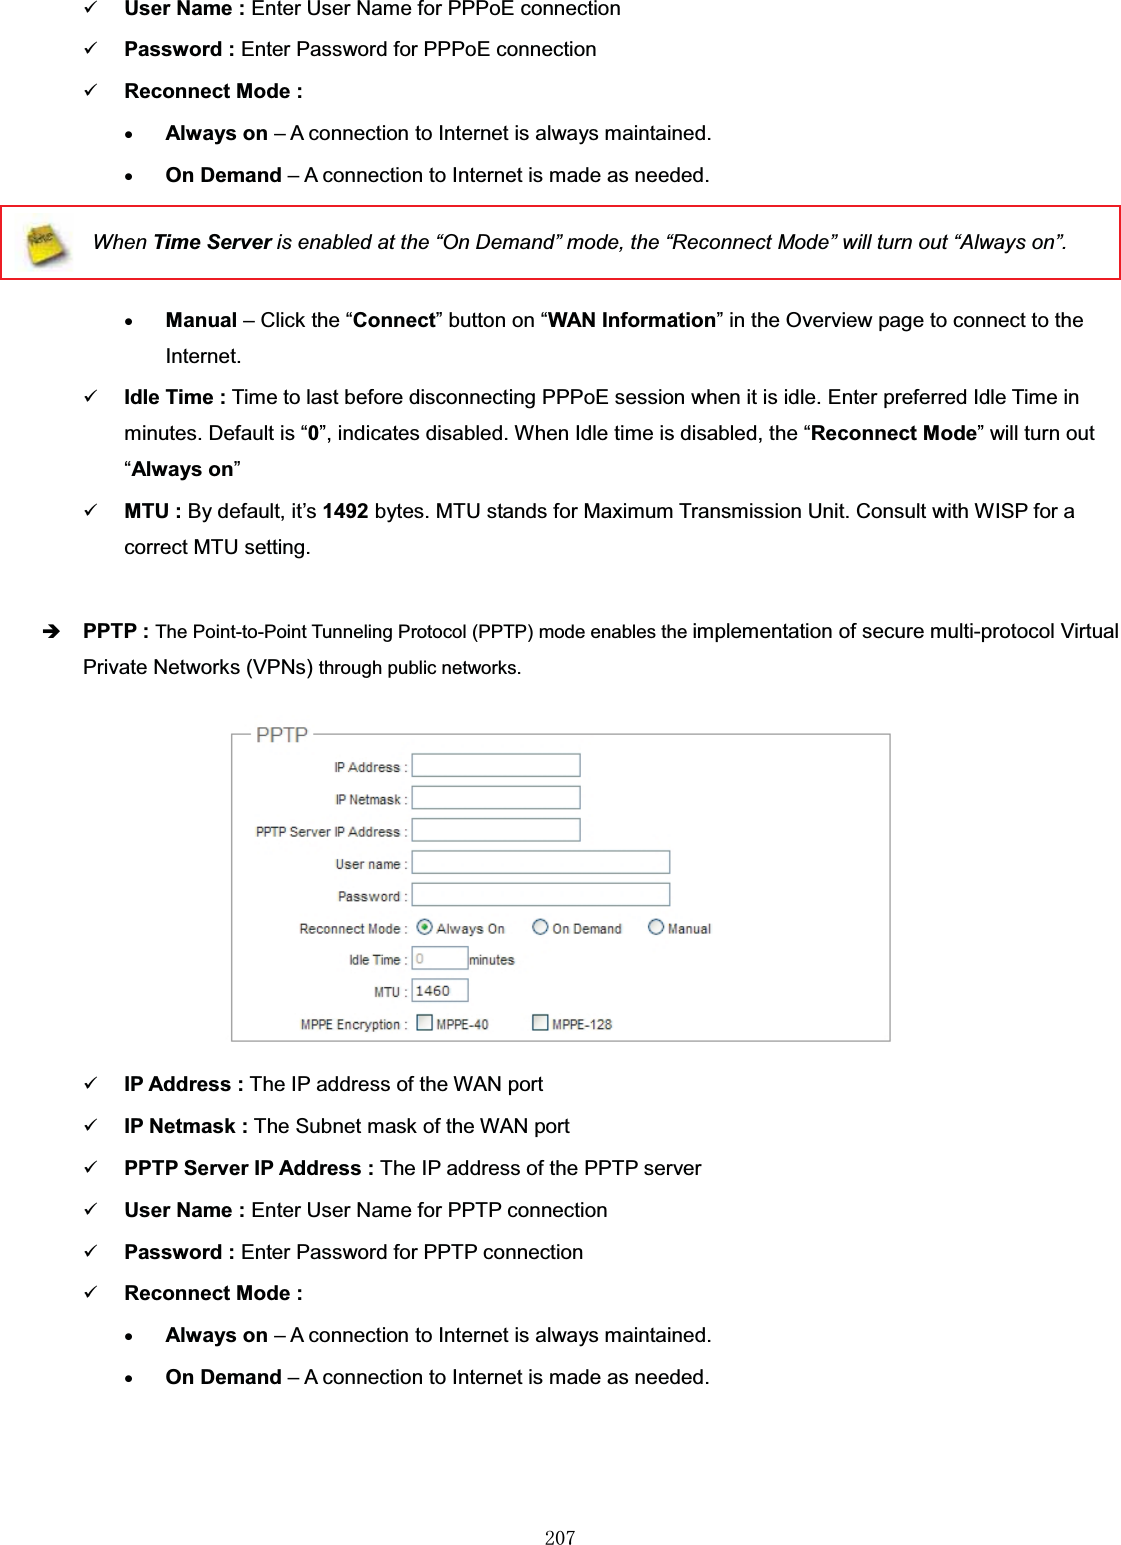 㻞㻜㻣9User Name : Enter User Name for PPPoE connection9Password : Enter Password for PPPoE connection9Reconnect Mode :xAlways on – A connection to Internet is always maintained.xOn Demand – A connection to Internet is made as needed.When Time Server is enabled at the “On Demand” mode, the “Reconnect Mode” will turn out “Always on”.xManual – Click the “Connect” button on “WAN Information” in the Overview page to connect to the Internet.9Idle Time : Time to last before disconnecting PPPoE session when it is idle. Enter preferred Idle Time in minutes. Default is “0”, indicates disabled. When Idle time is disabled, the “Reconnect Mode” will turn out “Always on”9MTU : By default, it’s 1492 bytes. MTU stands for Maximum Transmission Unit. Consult with WISP for a correct MTU setting.ÎPPTP : The Point-to-Point Tunneling Protocol (PPTP) mode enables the implementation of secure multi-protocol Virtual Private Networks (VPNs) through public networks.9IP Address : The IP address of the WAN port9IP Netmask : The Subnet mask of the WAN port9PPTP Server IP Address : The IP address of the PPTP server9User Name : Enter User Name for PPTP connection9Password : Enter Password for PPTP connection9Reconnect Mode :xAlways on – A connection to Internet is always maintained.xOn Demand – A connection to Internet is made as needed.